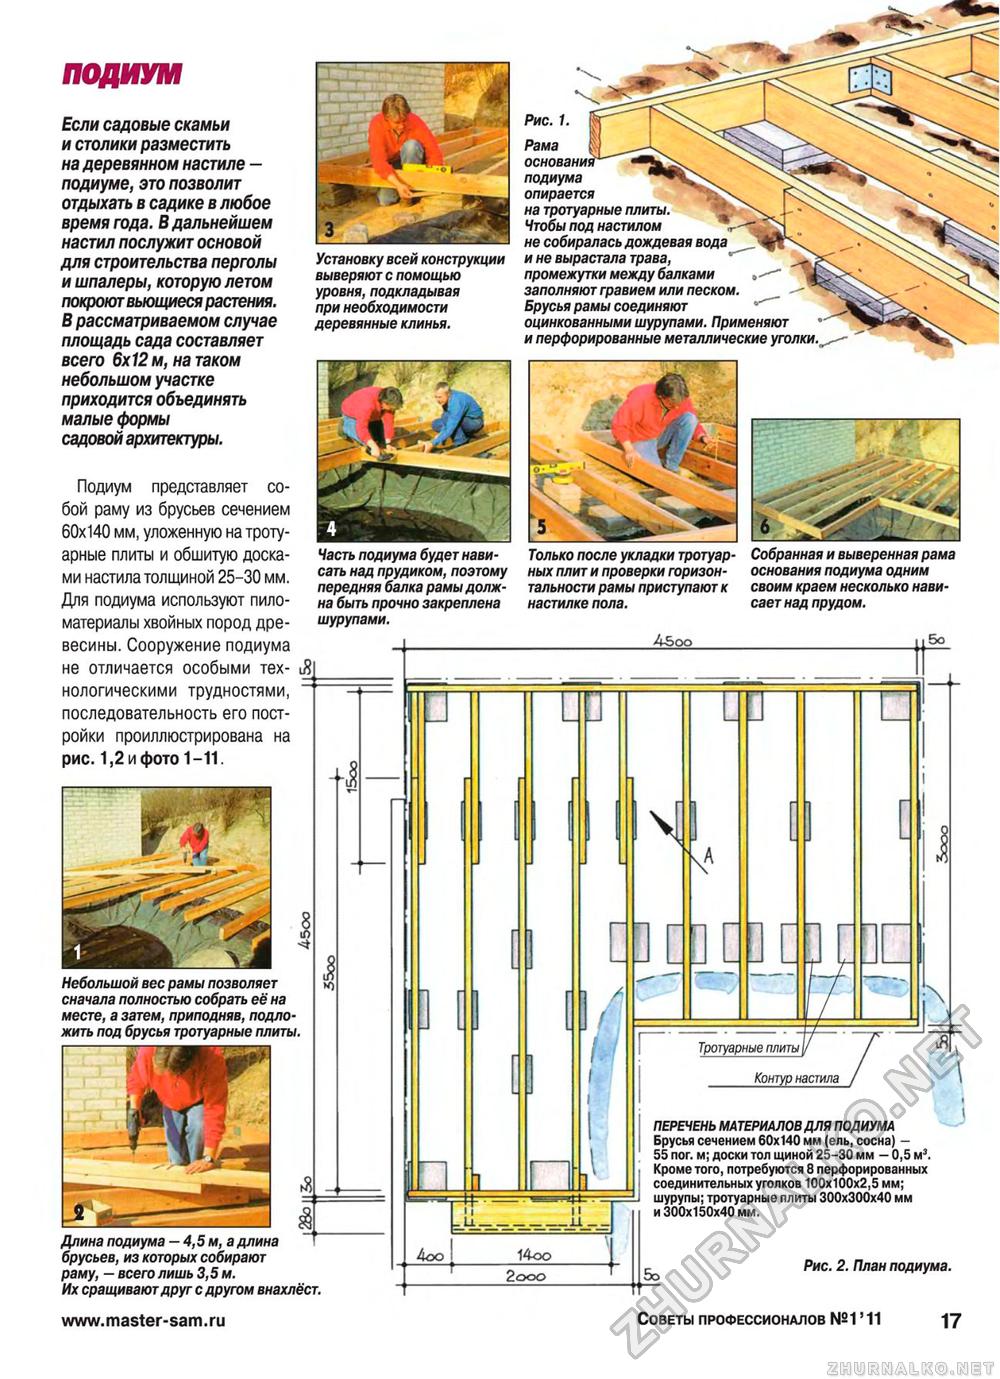 Советы профессионалов 2011-01, страница 17